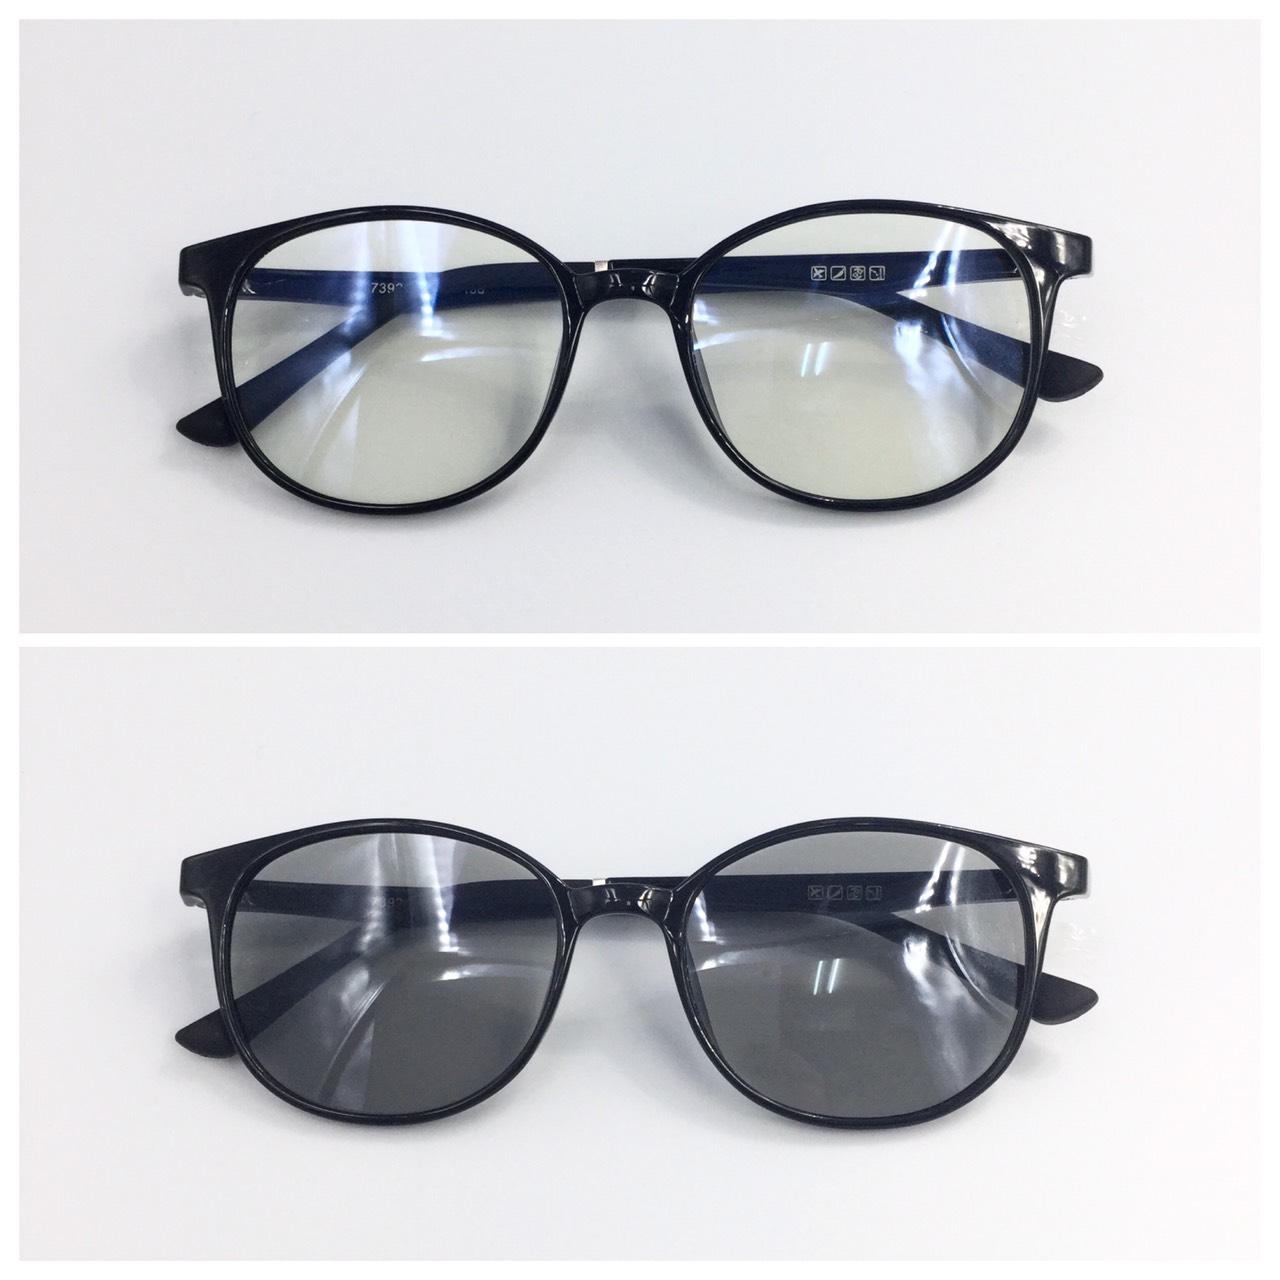 แว่นตากรองแสงเลนส์เปลี่ยนสี คอม มือถือ ออกแดดเปลี่ยนสี ออโต้ Blue+Auto รุ่น K7392